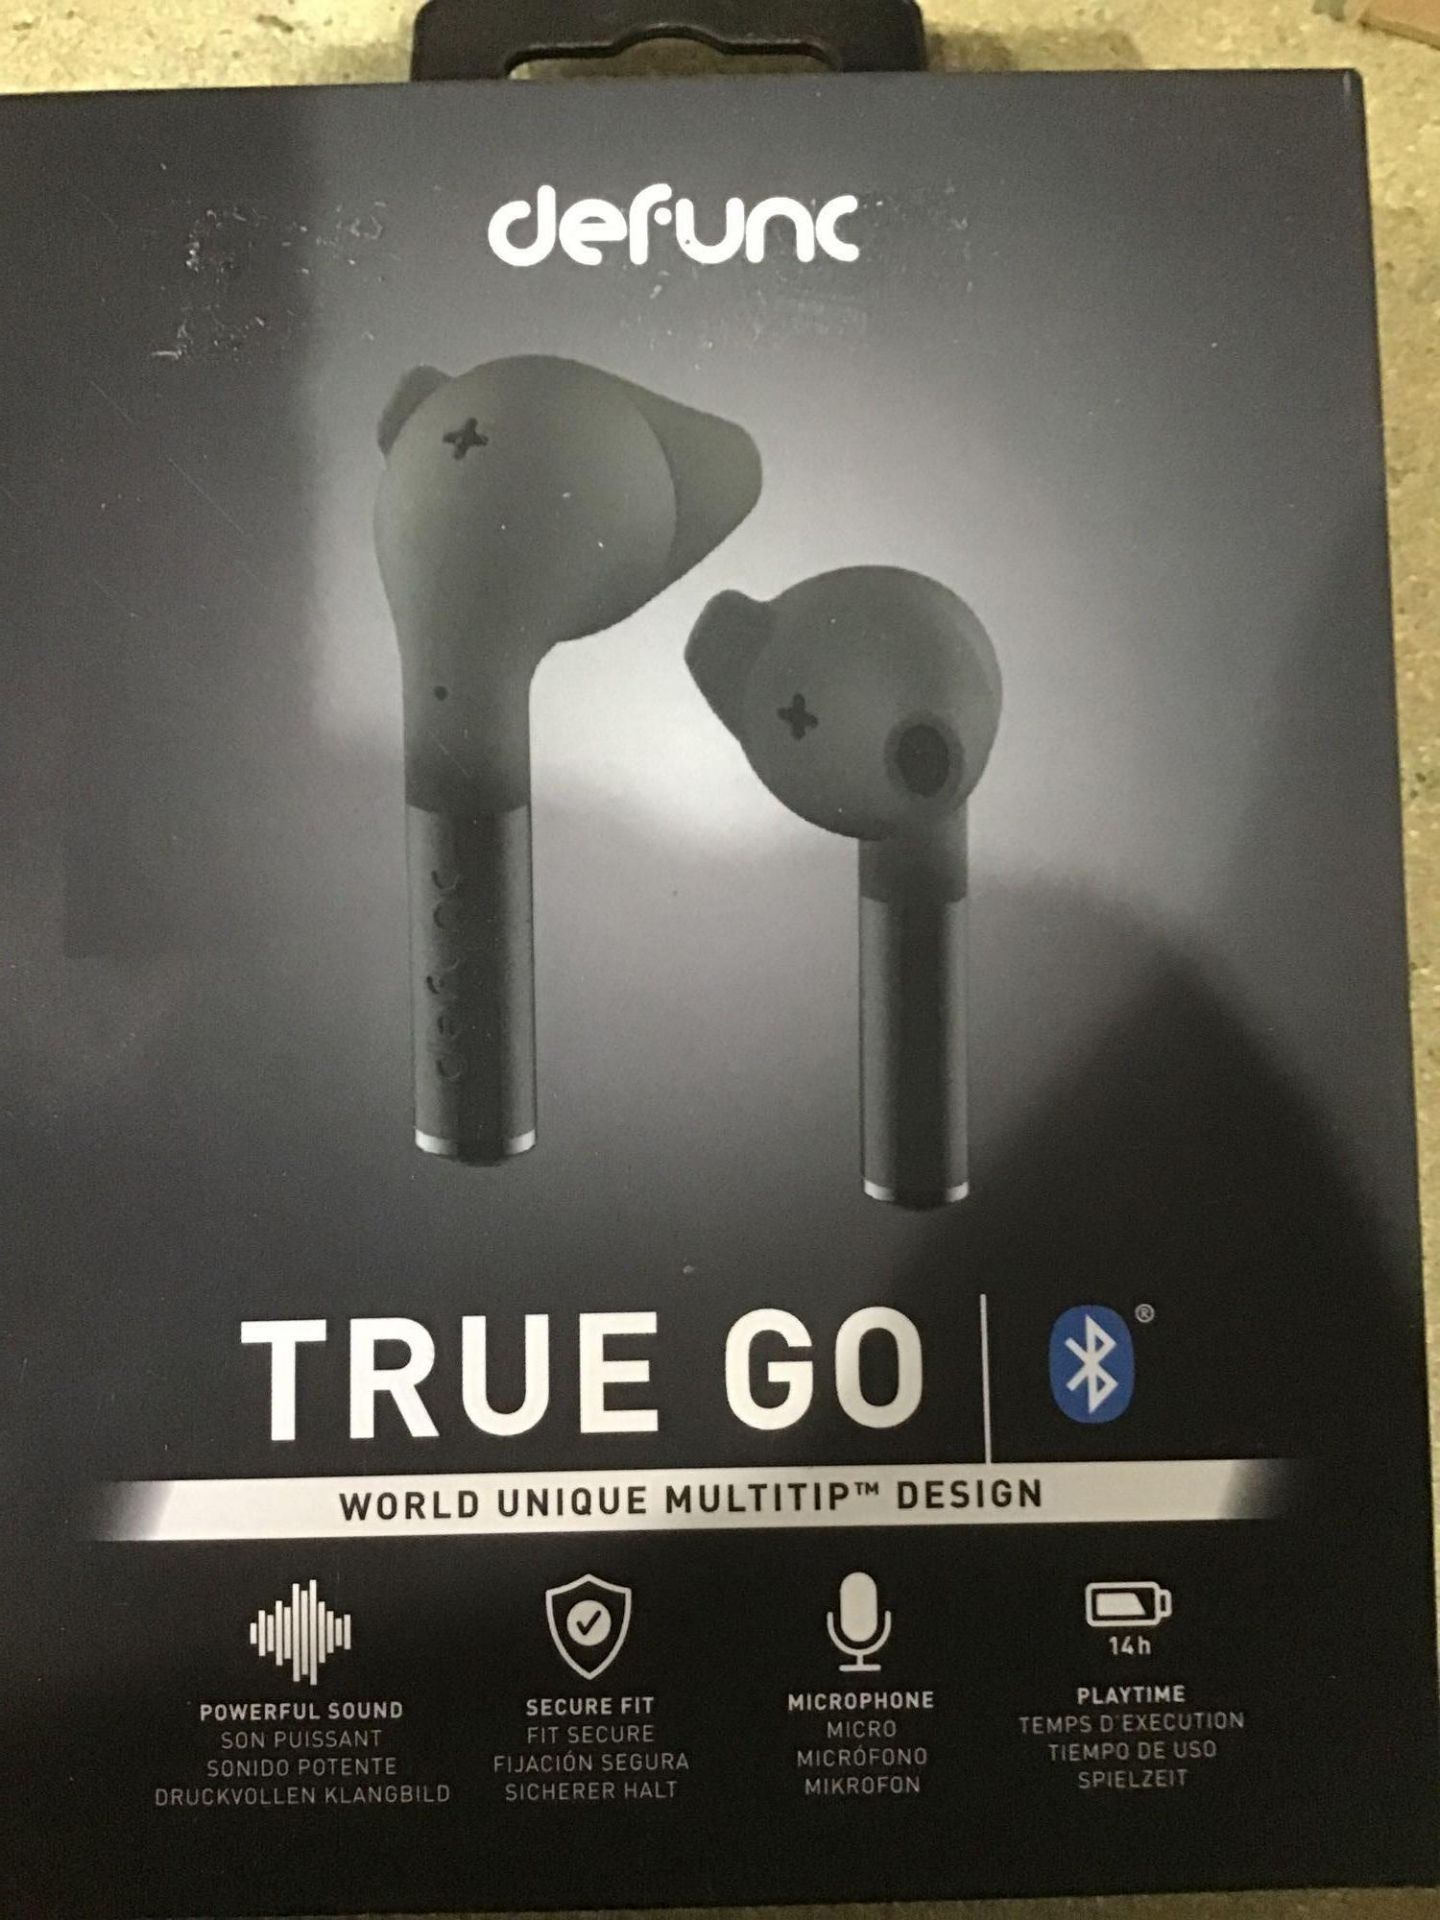 Defunc True Go Wireless Earphones with Dual Mic's-Type C Charging-5.0 Bluetooth Headphones - Image 4 of 6